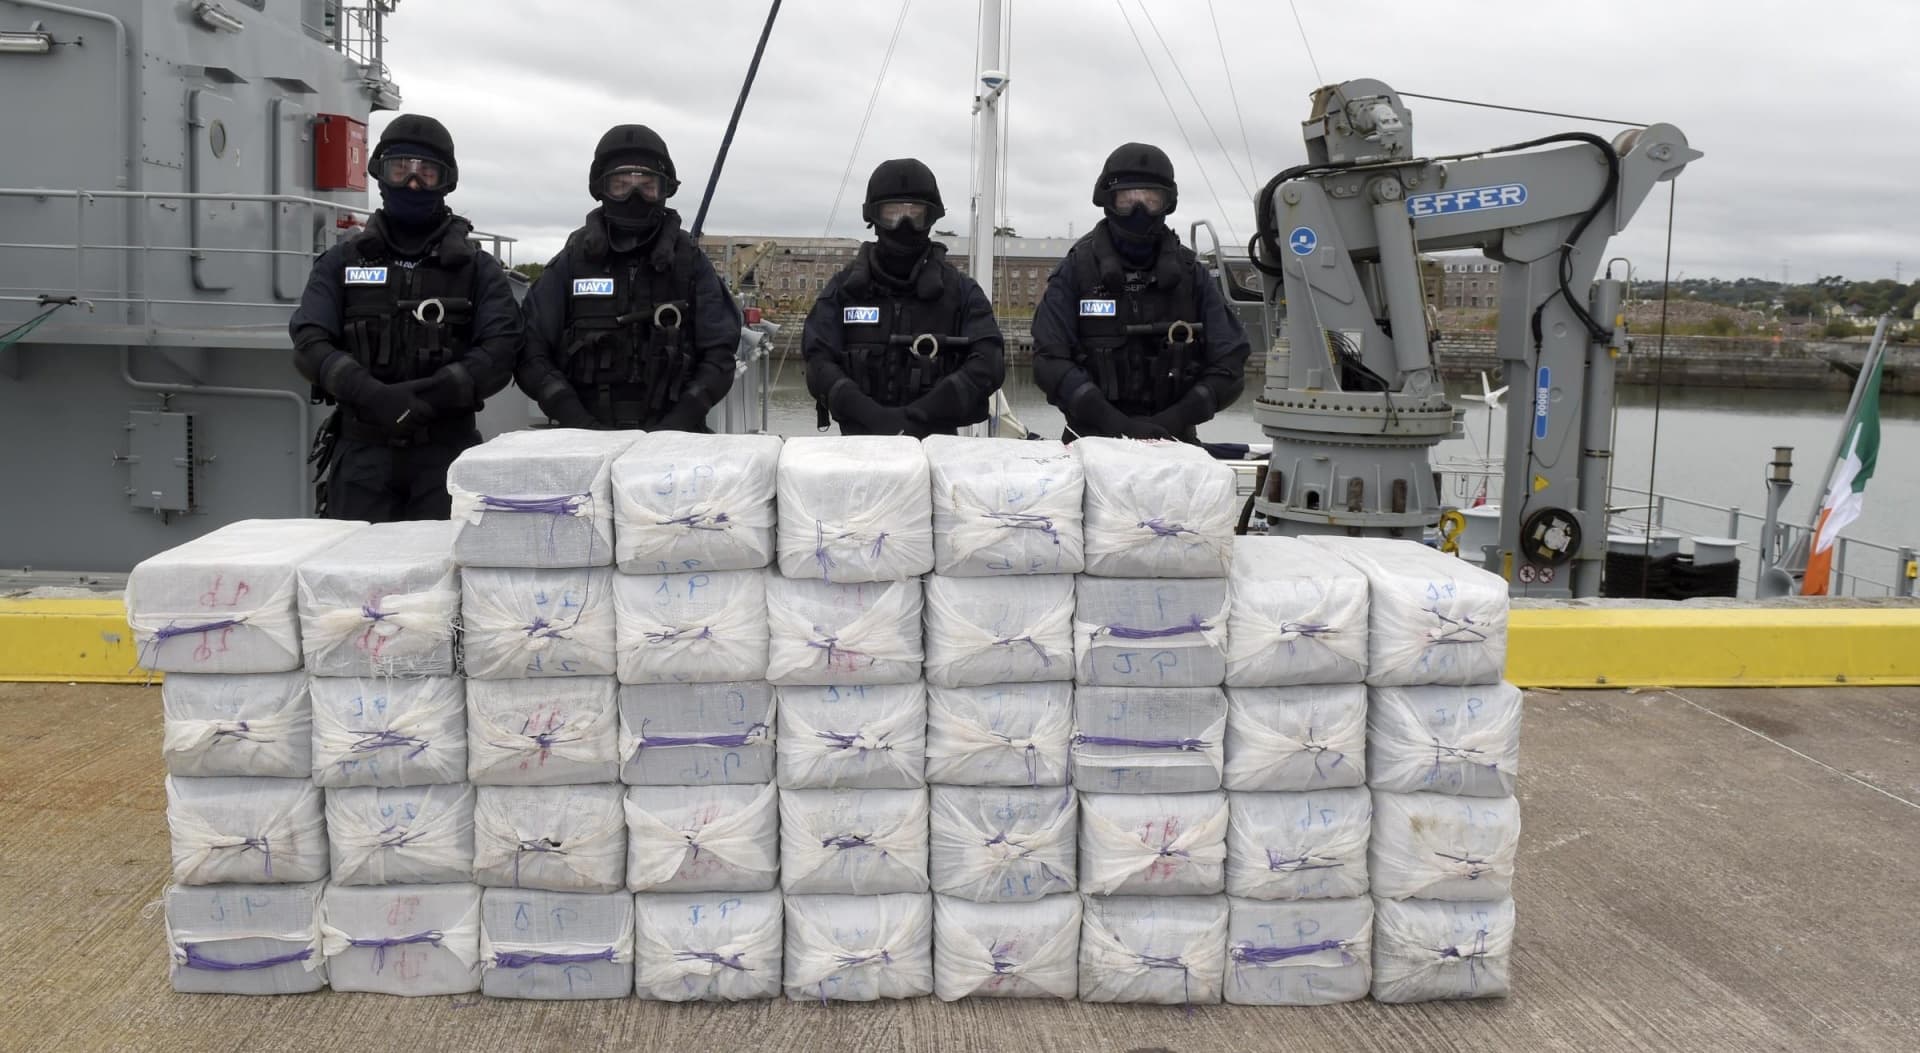 Két tonna kokaint foglaltak le Costa Rica közelében a tengeren